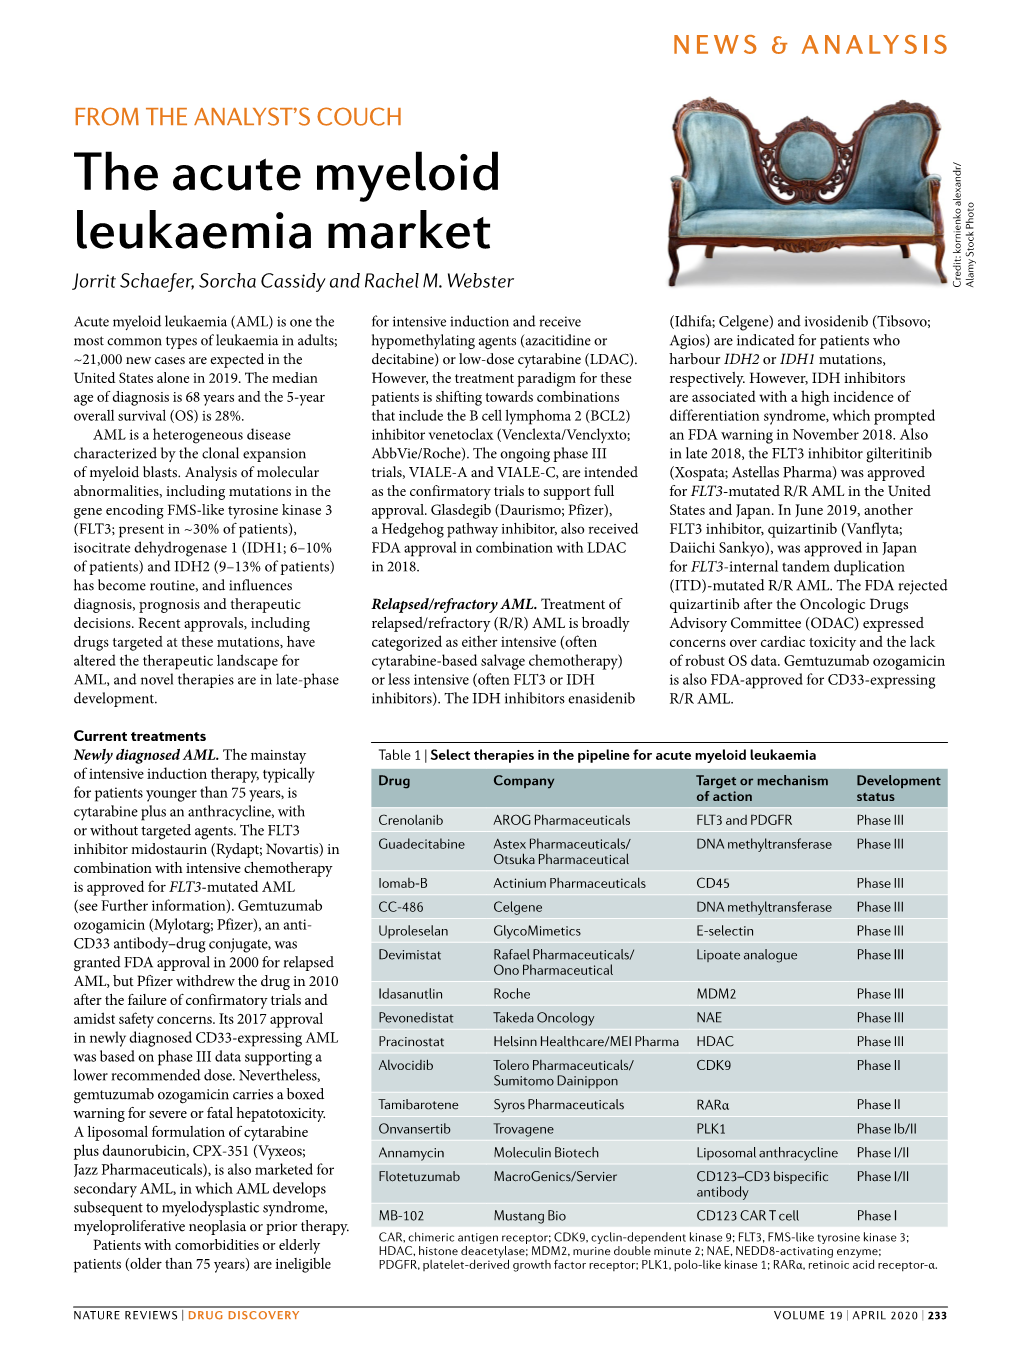 The Acute Myeloid Leukaemia Market